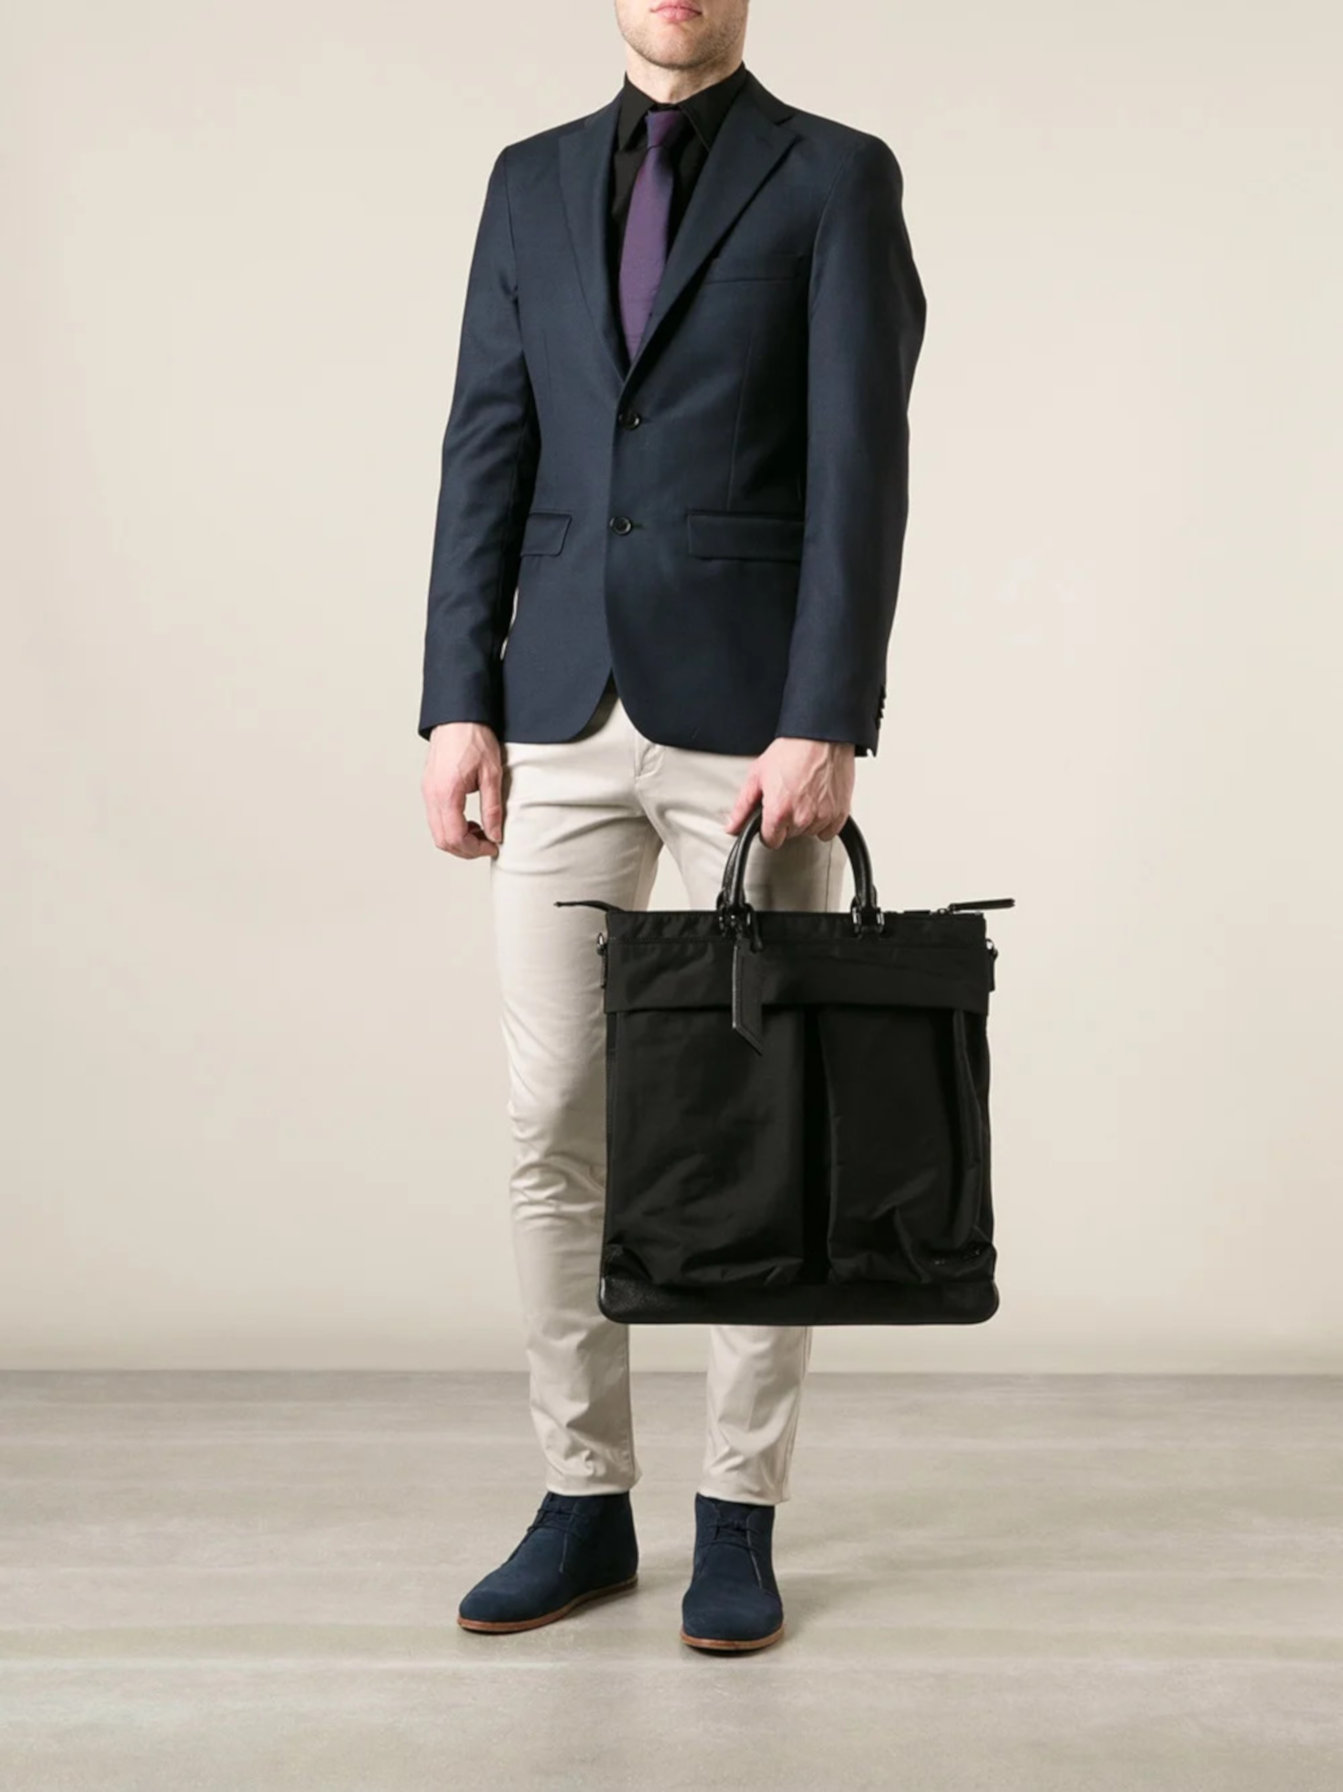 Maxi bolsas masculinas: os destaques de Paris e Milão - GQ